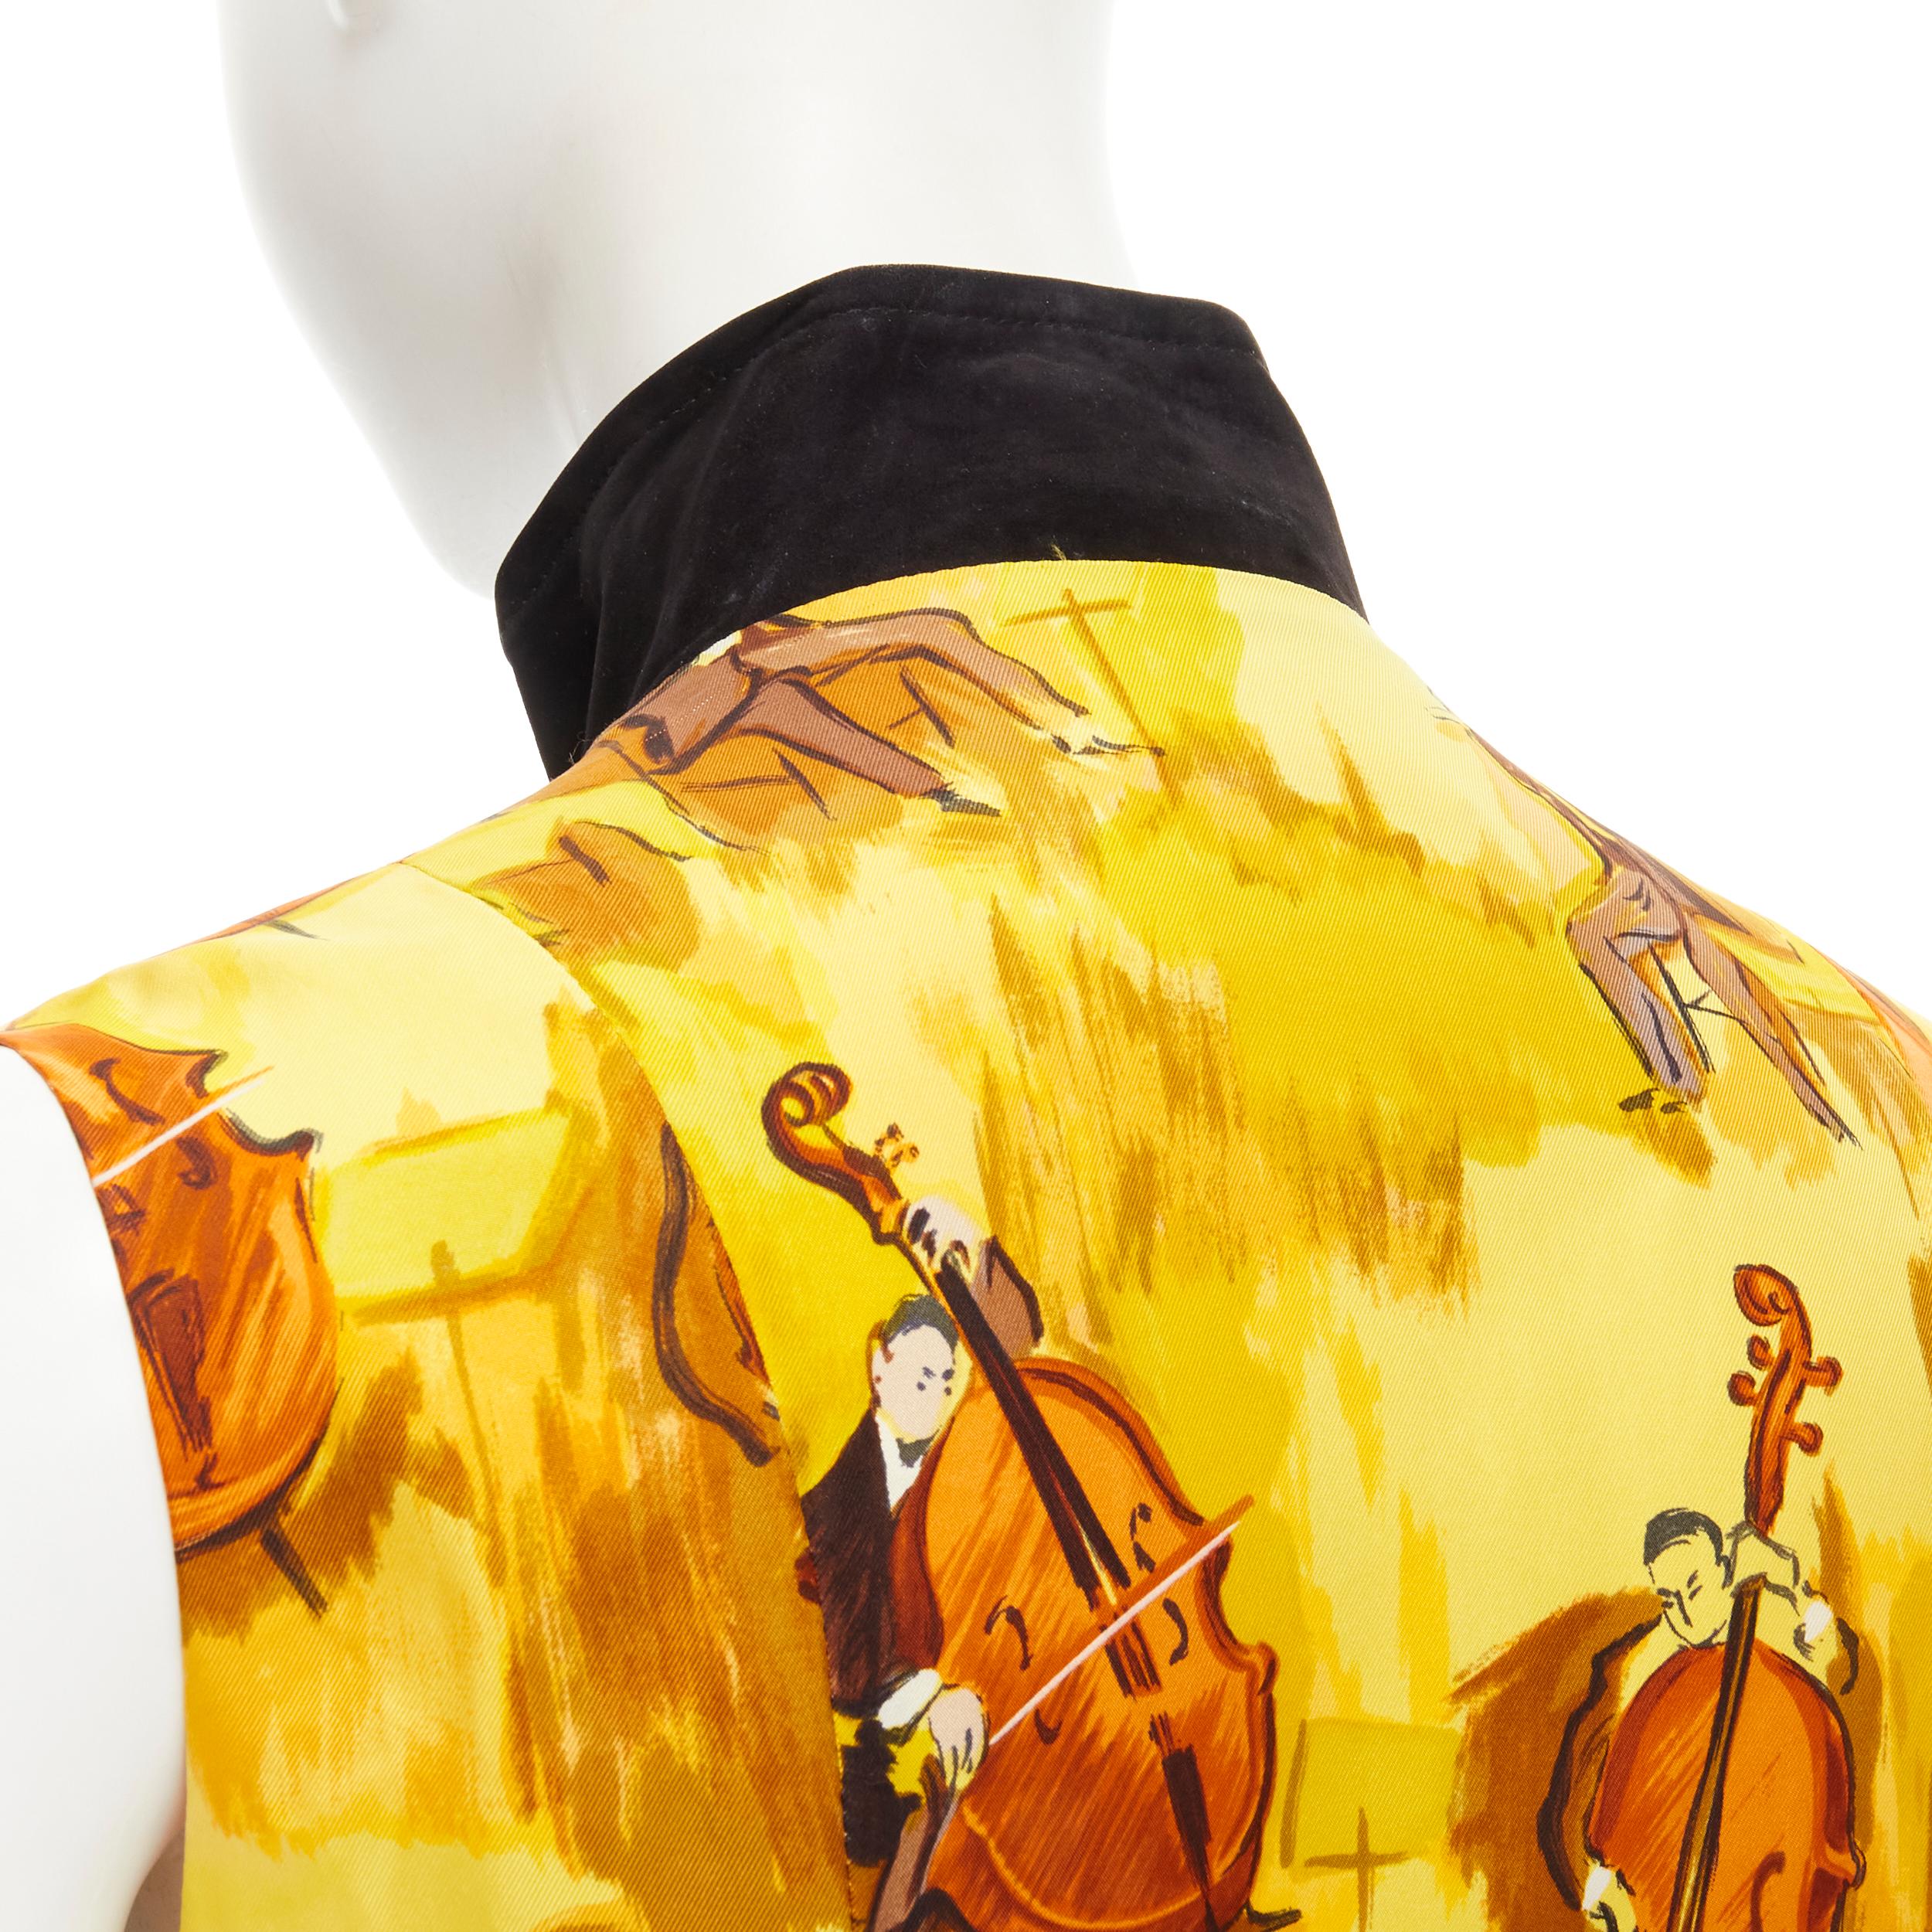 HERMES Vintage Concerto yellow Violinist silk black suede leather vest FR38 S For Sale 1